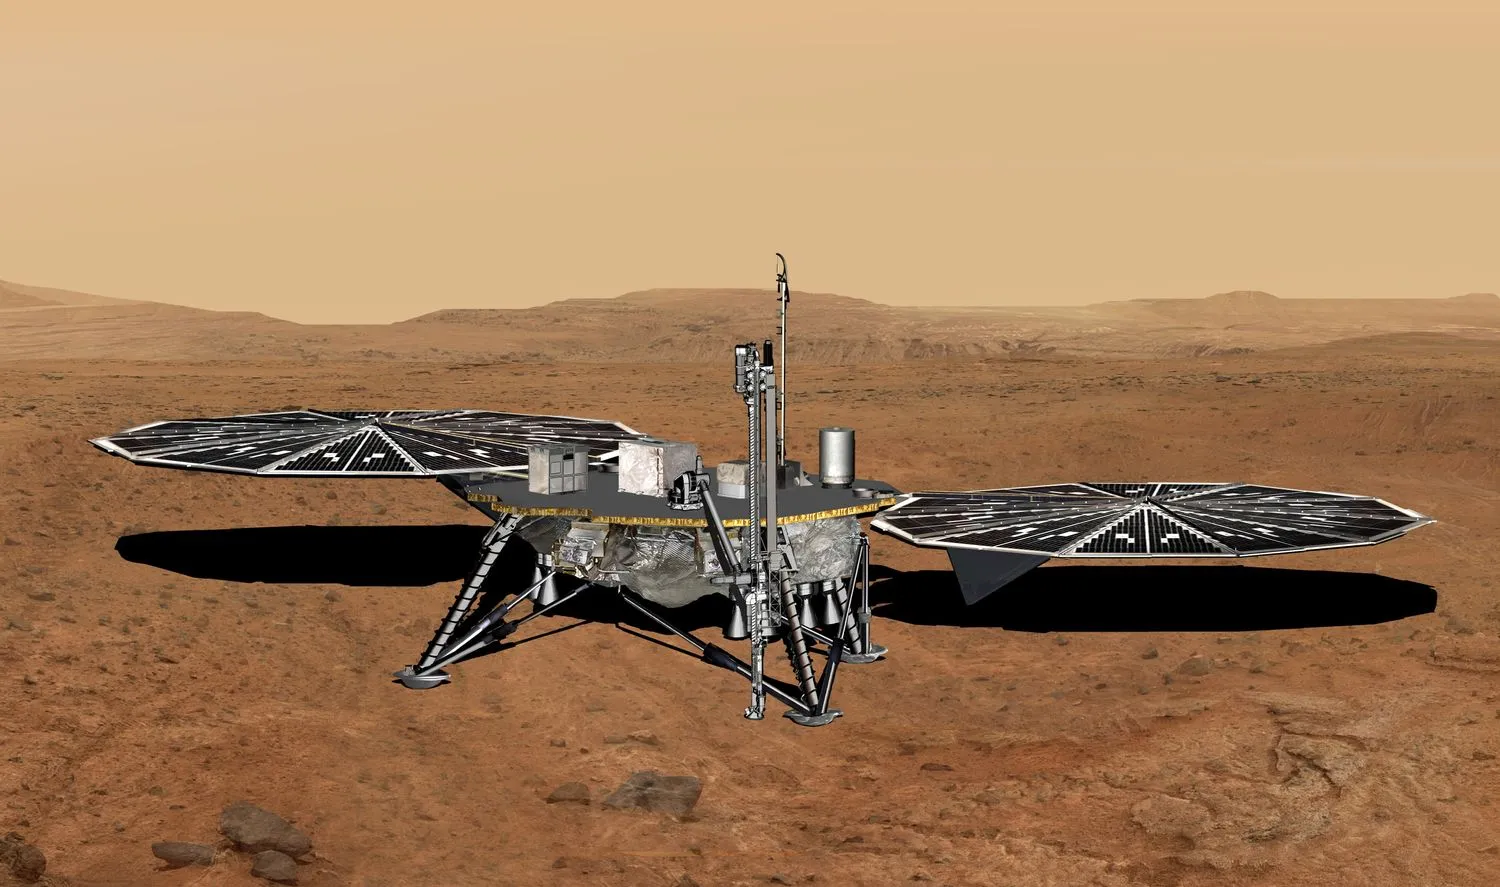 ein untersetzter Lander mit vier Beinen und zwei großen Sonnenkollektoren auf der Oberfläche eines rötlich-orangen Wüstenplaneten